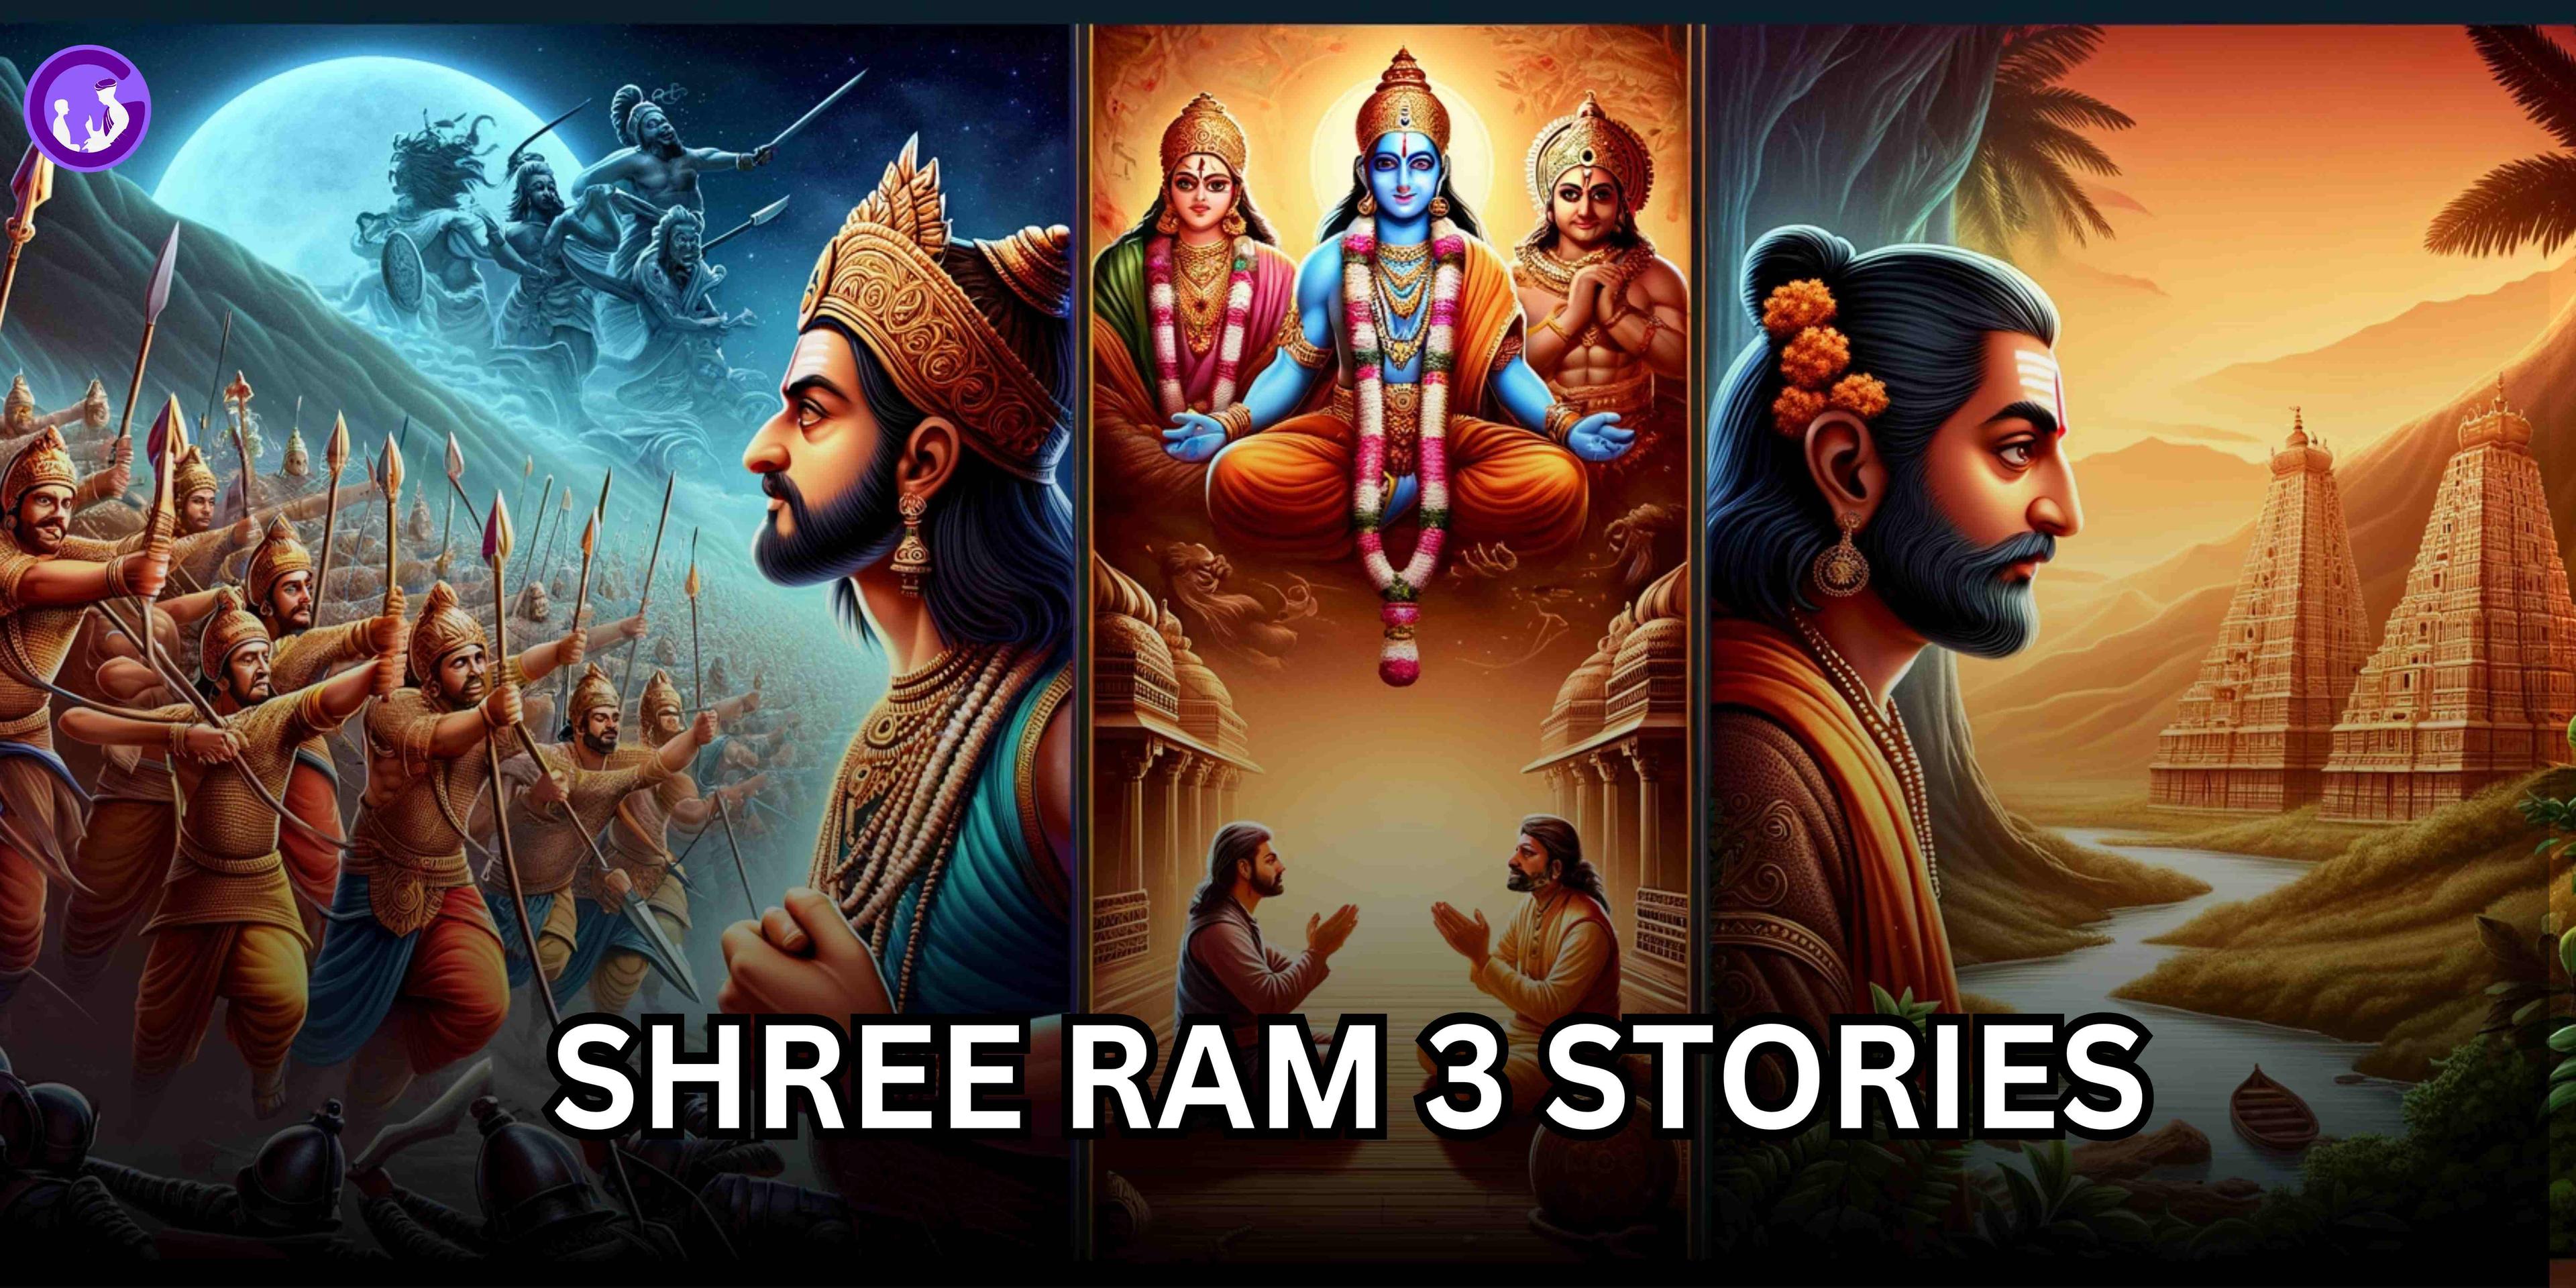 भगवान राम के धर्म और न्याय के प्रतीक की तीन कहानियाँ